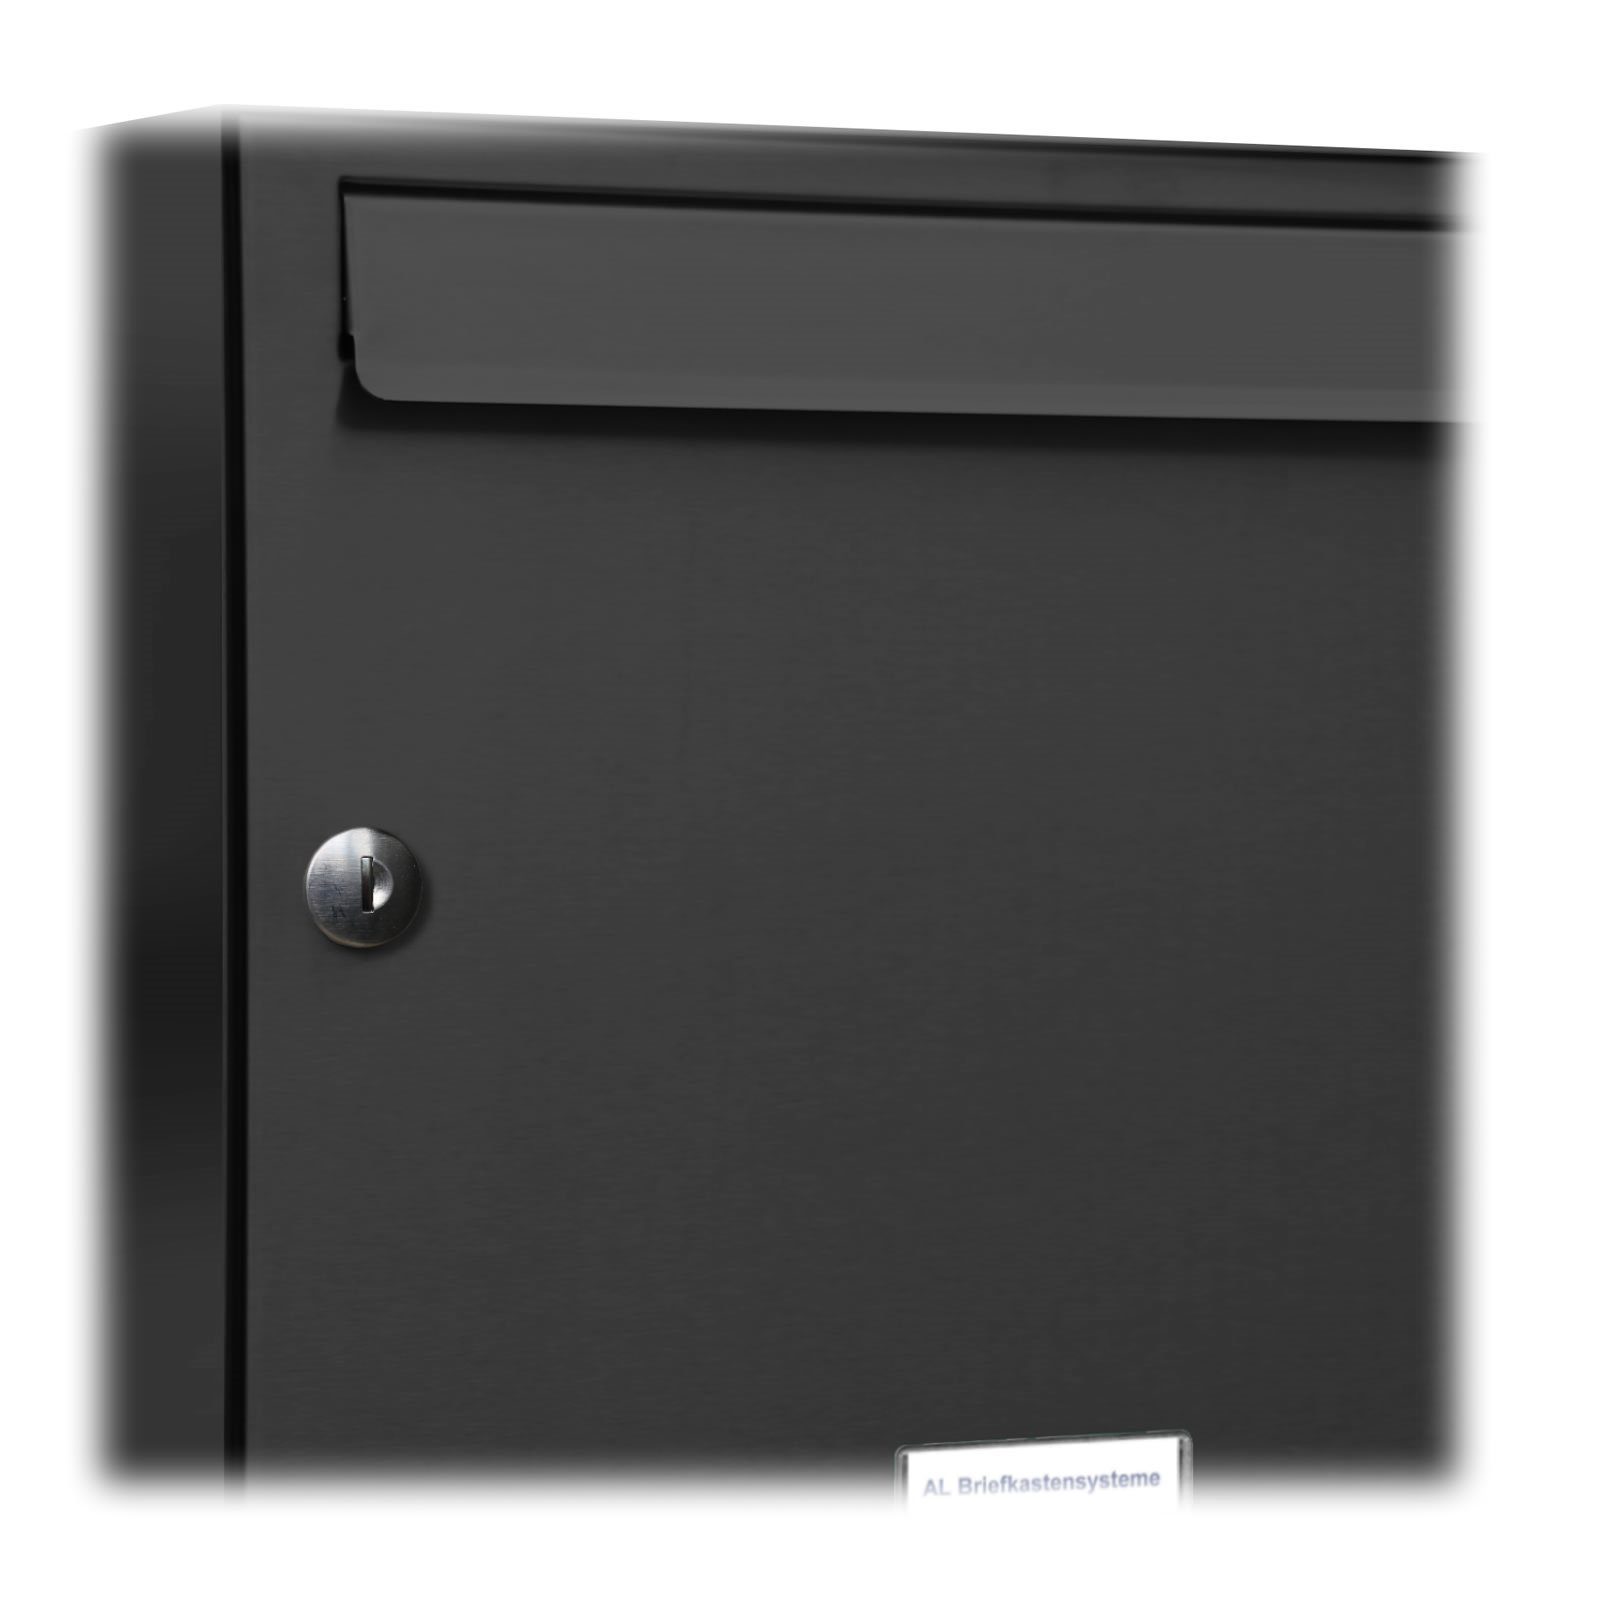 AL Briefkastensysteme Wandbriefkasten 5er Anthrazit für Wand 2x3 RAL 7016 Briefkasten Premium Farbe Außen